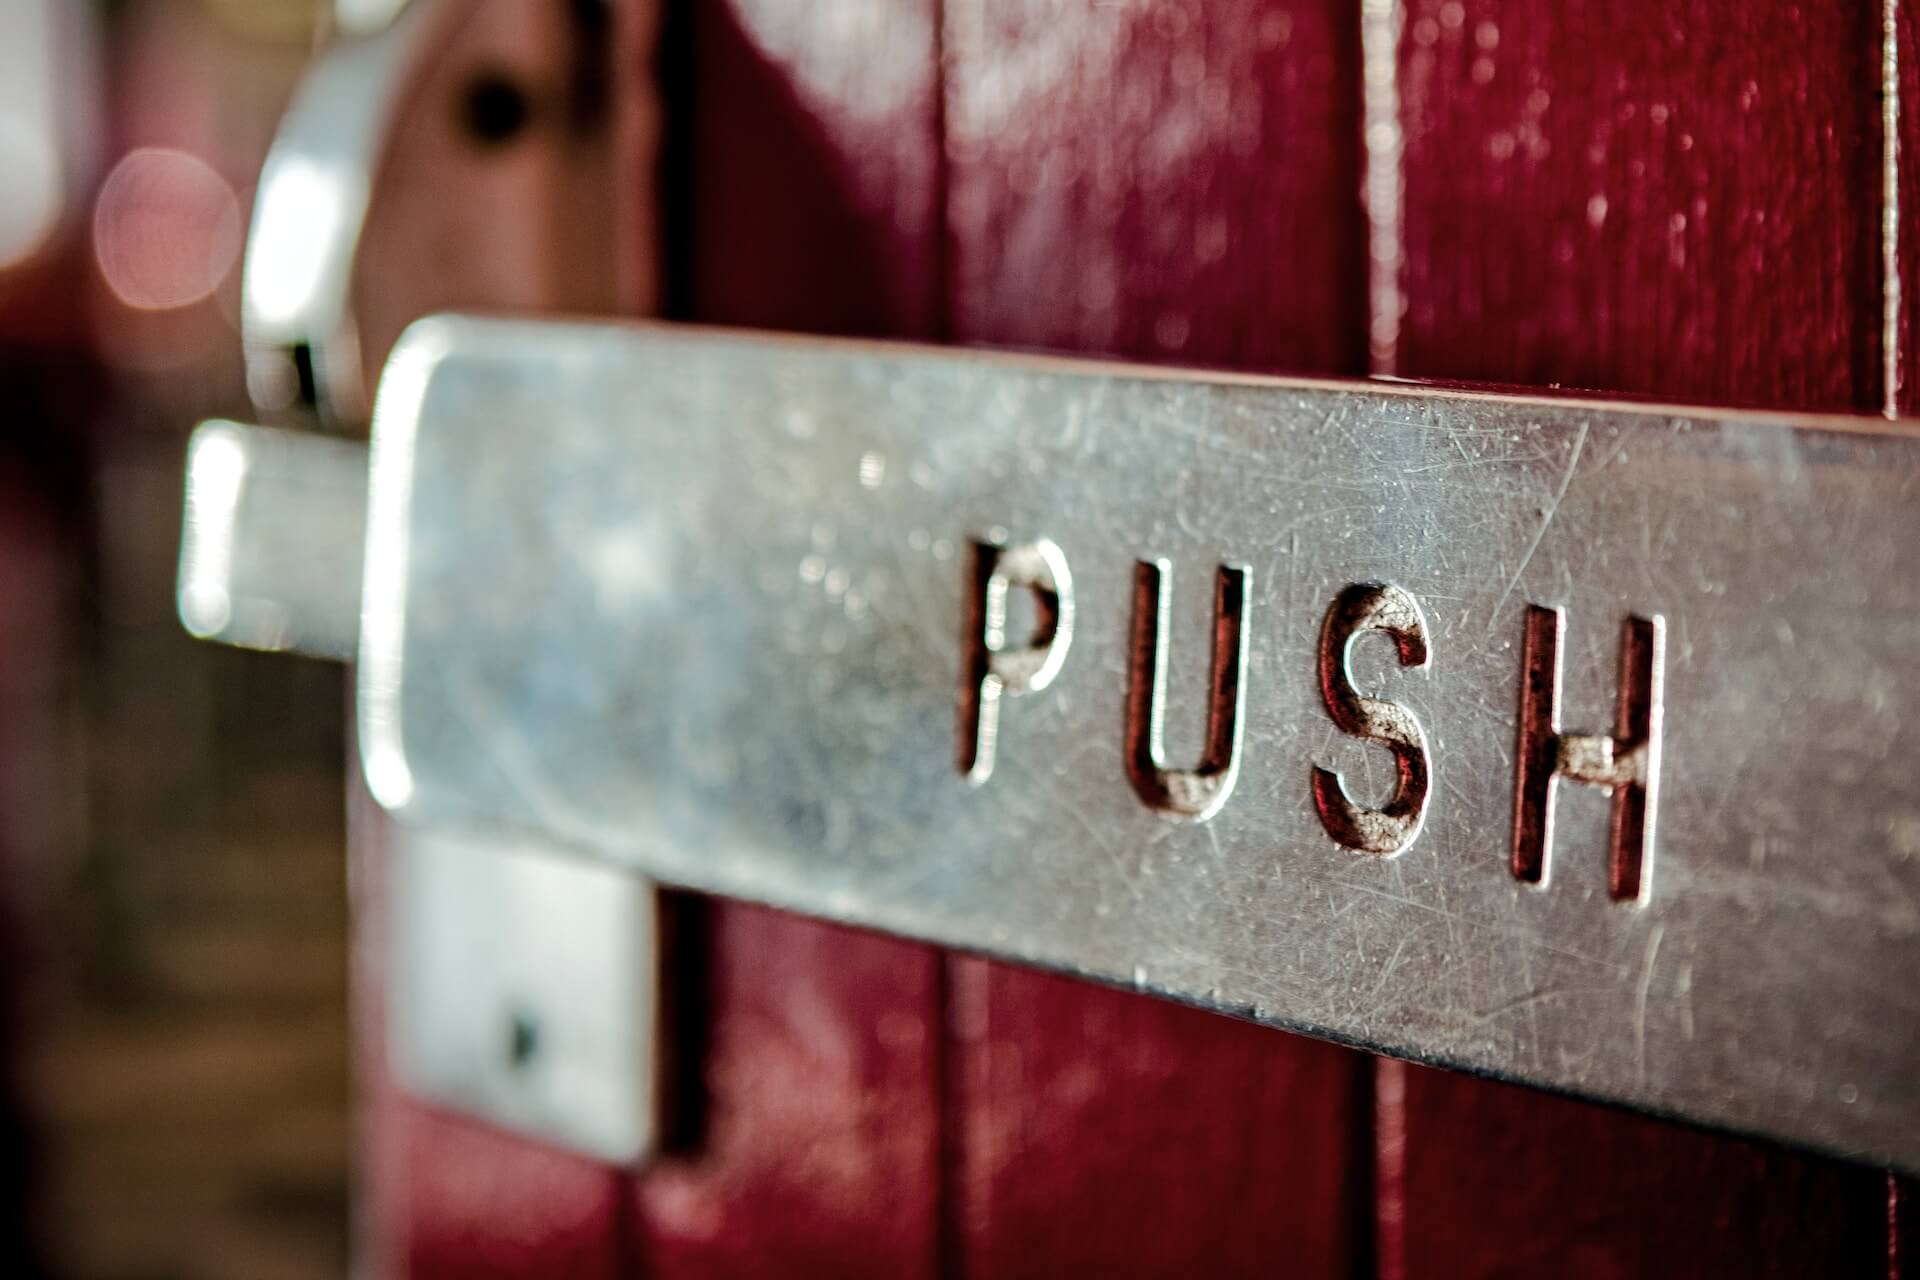 Restaurant door handle that says "push"